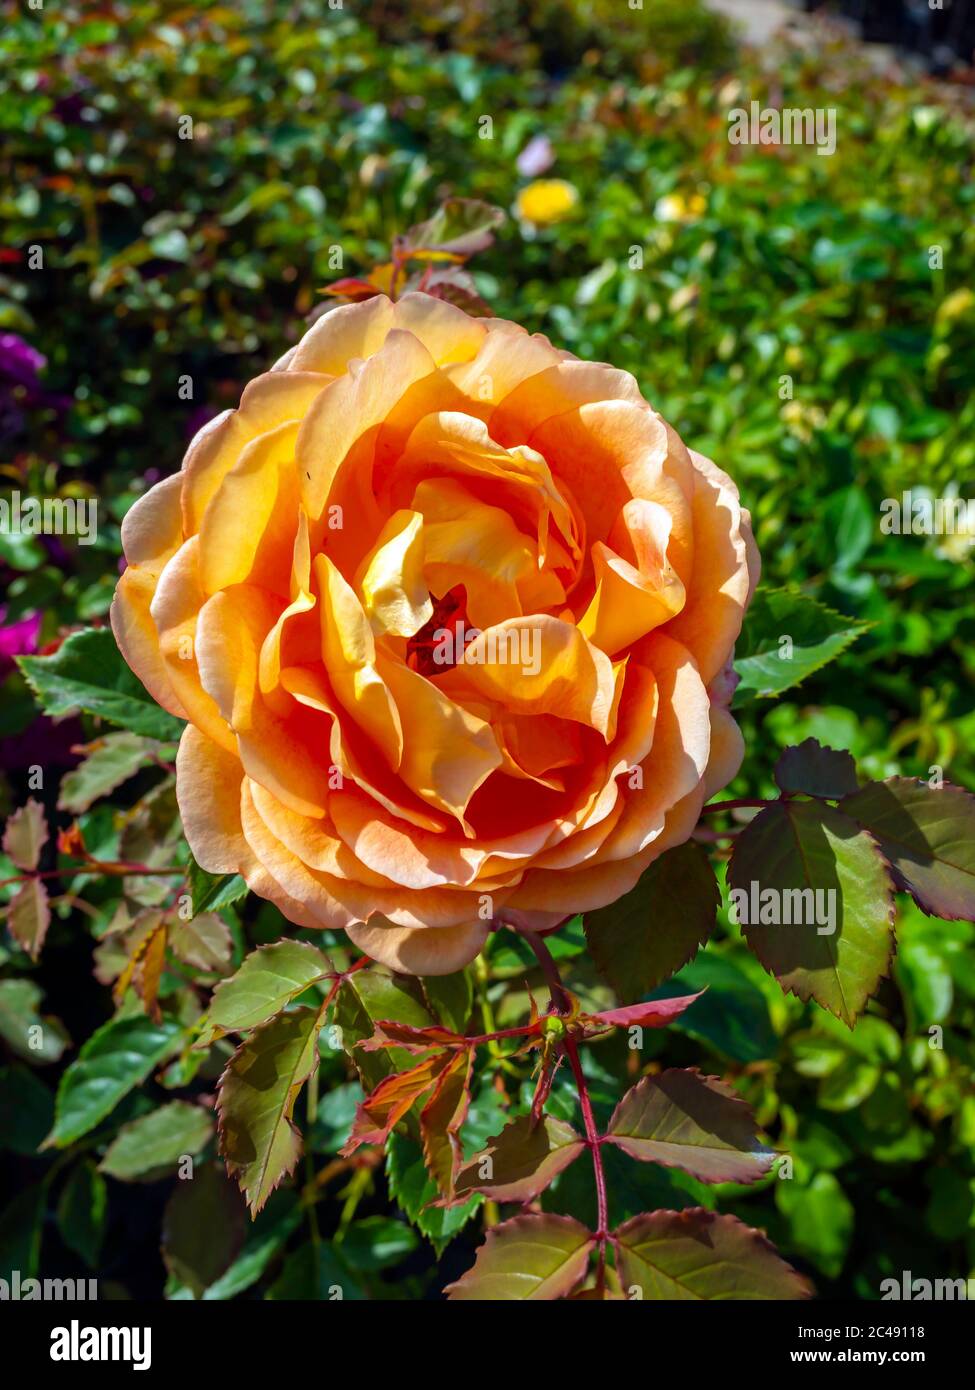 Thé orange rose variété Lady of Shallot à vendre dans un jardin dans le nord du Yorkshire Angleterre Banque D'Images